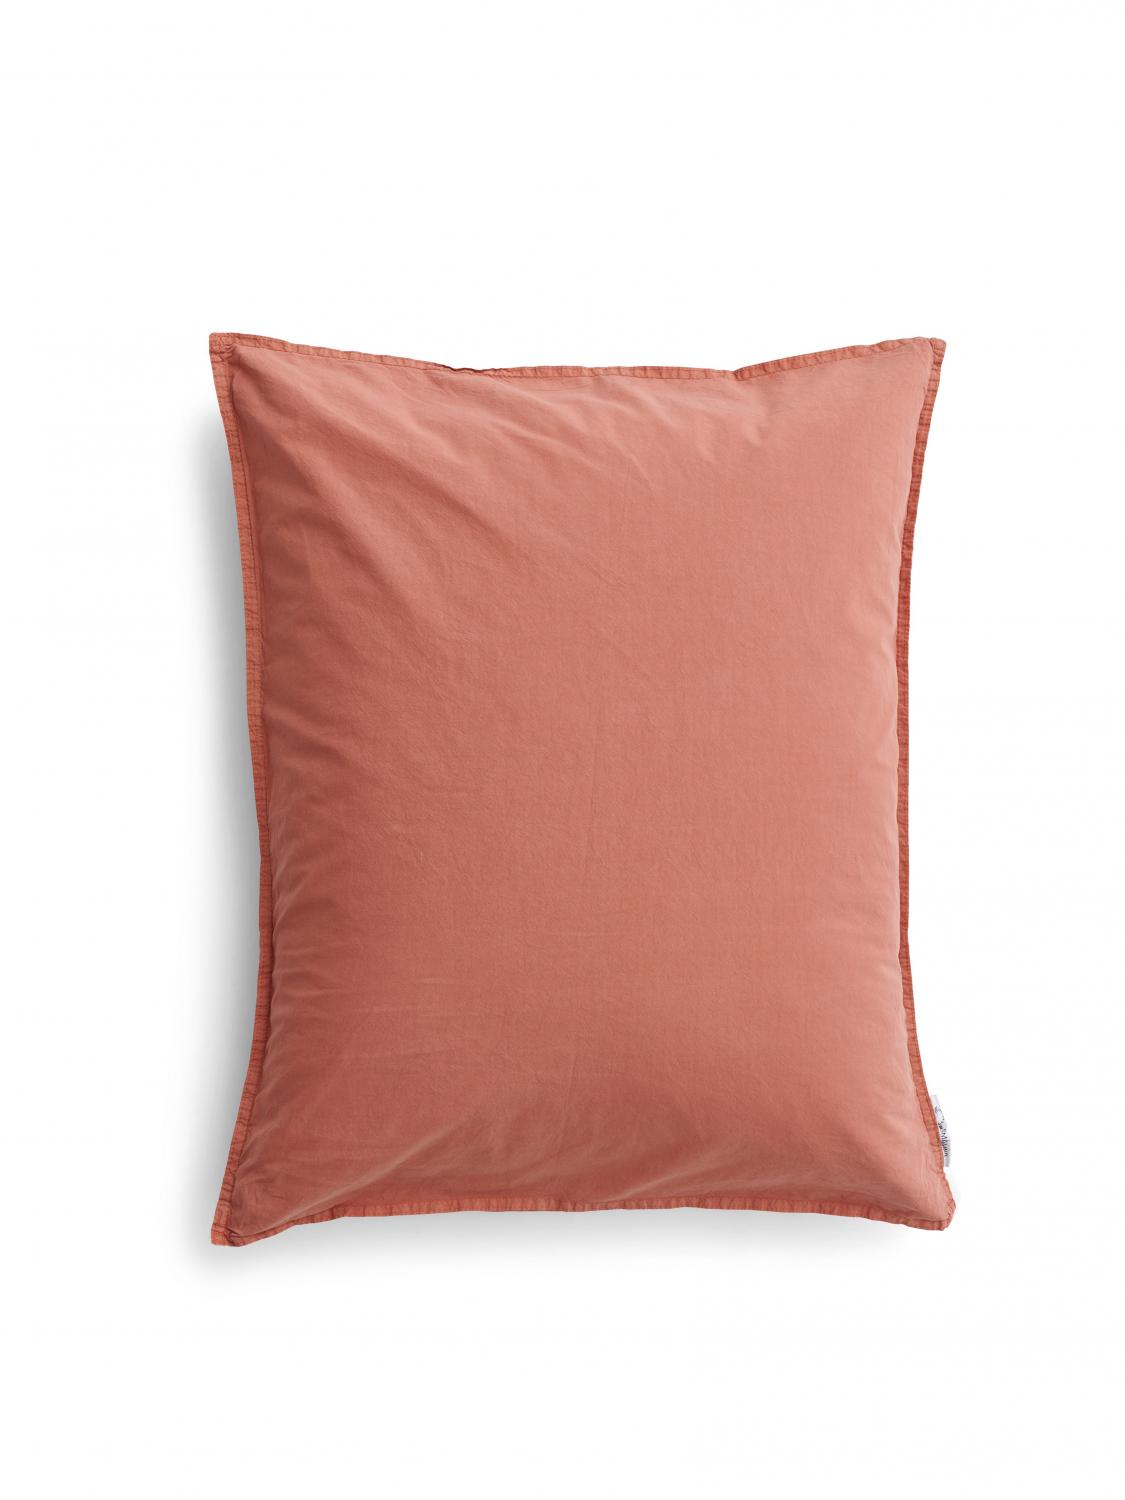 50x60cm Pillowcase Crinkle Terracotta